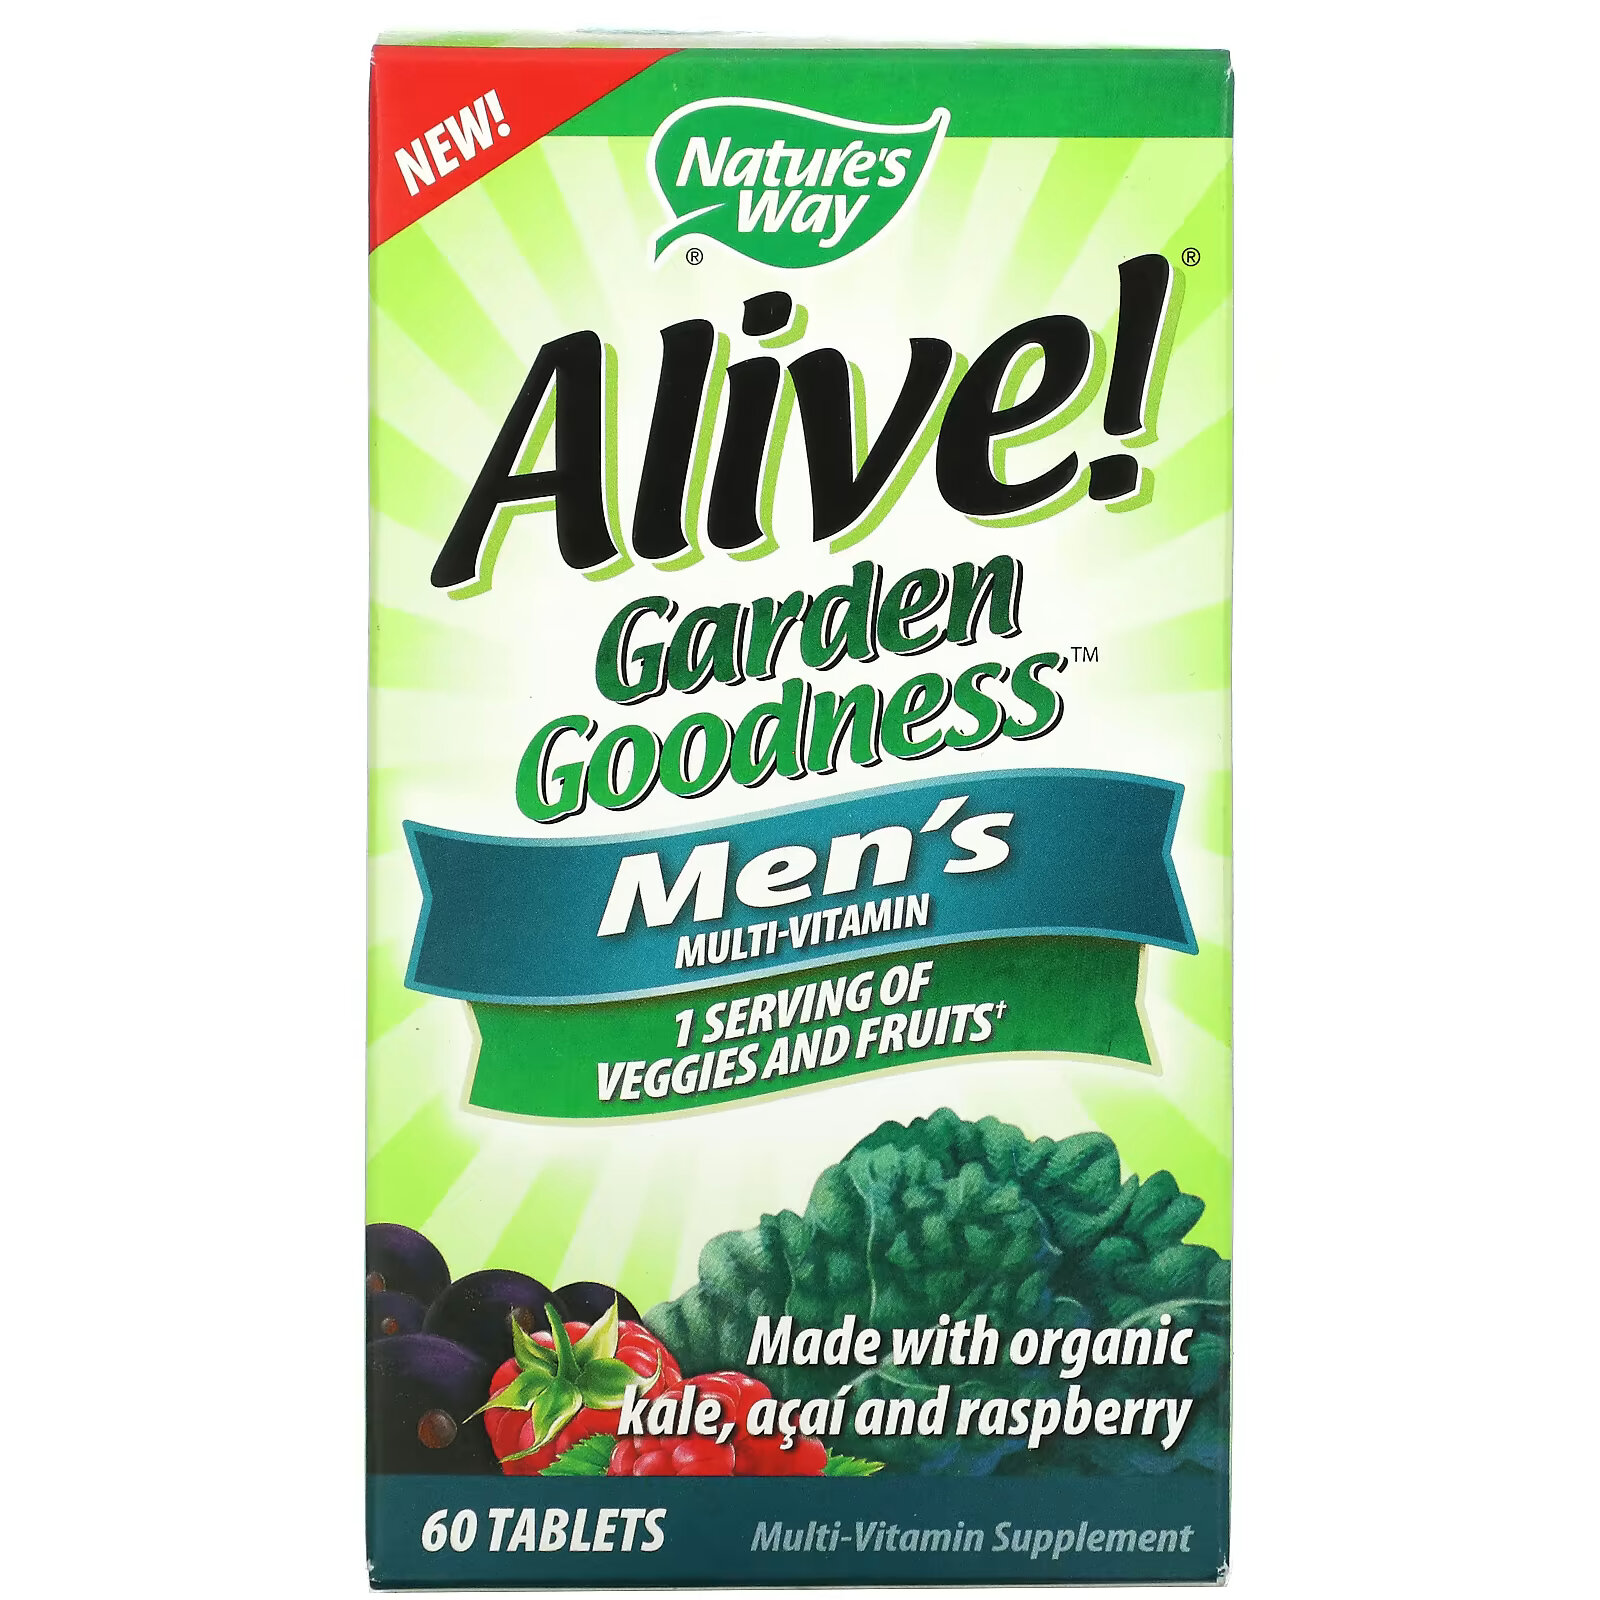 Мультивитамины Nature's Way Alive! Garden Goodness для мужчин, 60 таблеток nature s way alive garden goodness мультивитамин для женщин 60 таблеток